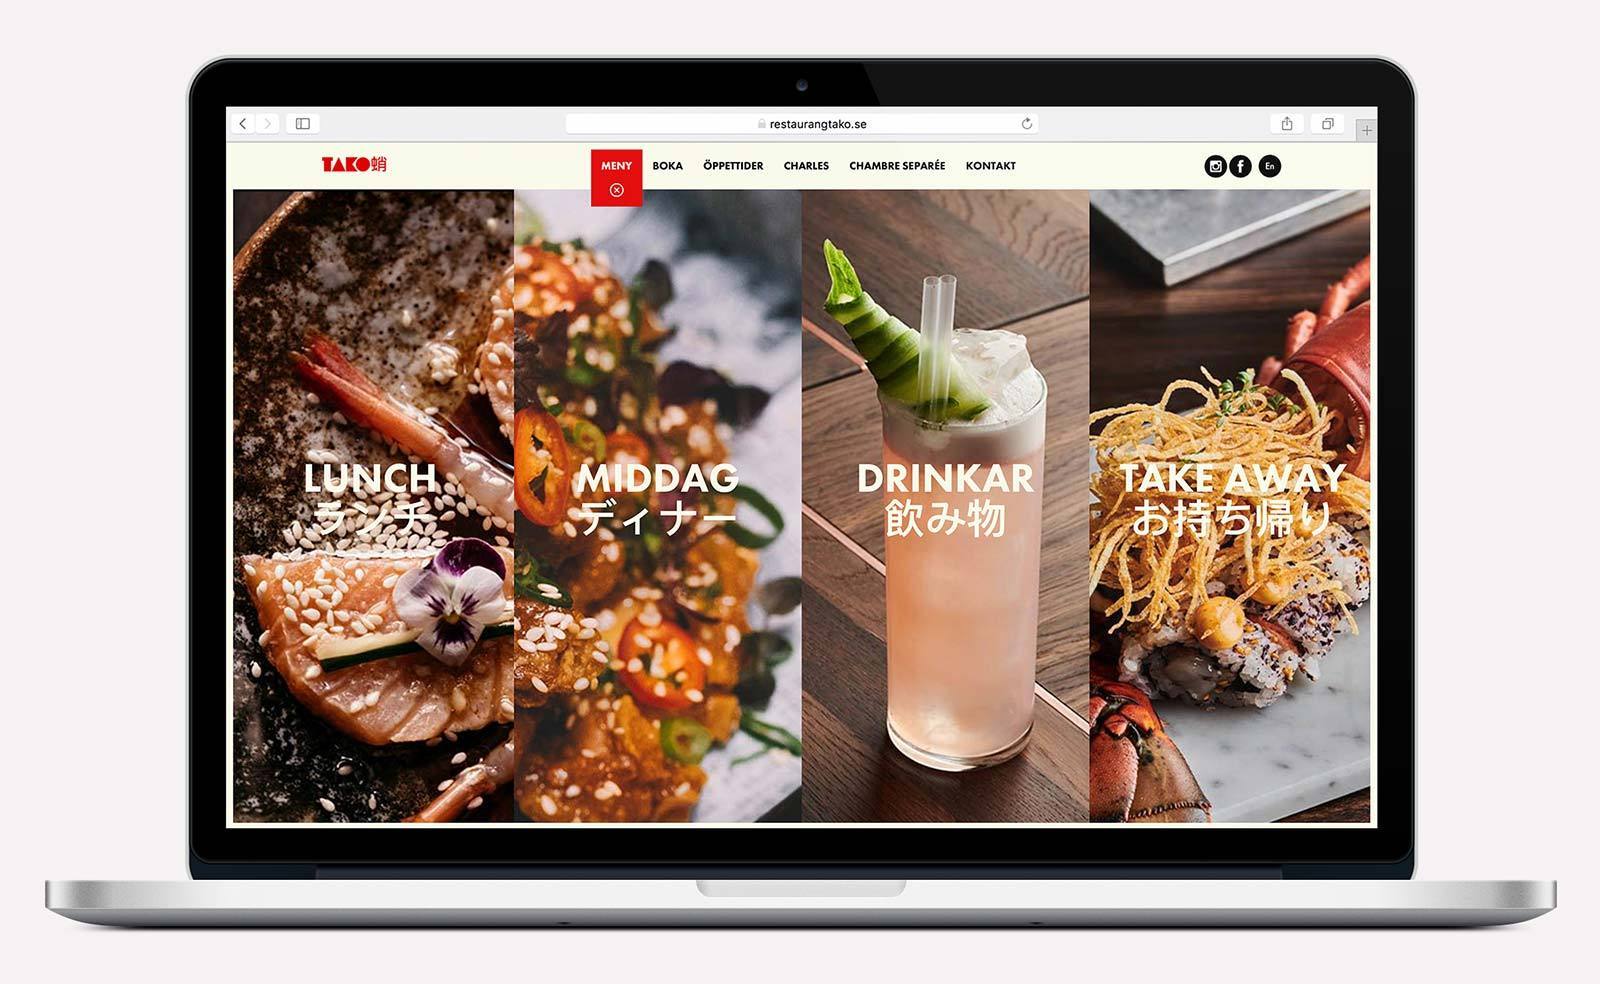 Restaurang Tako webbplats - utfälld menyflik med stora bilder på mat och drinkar